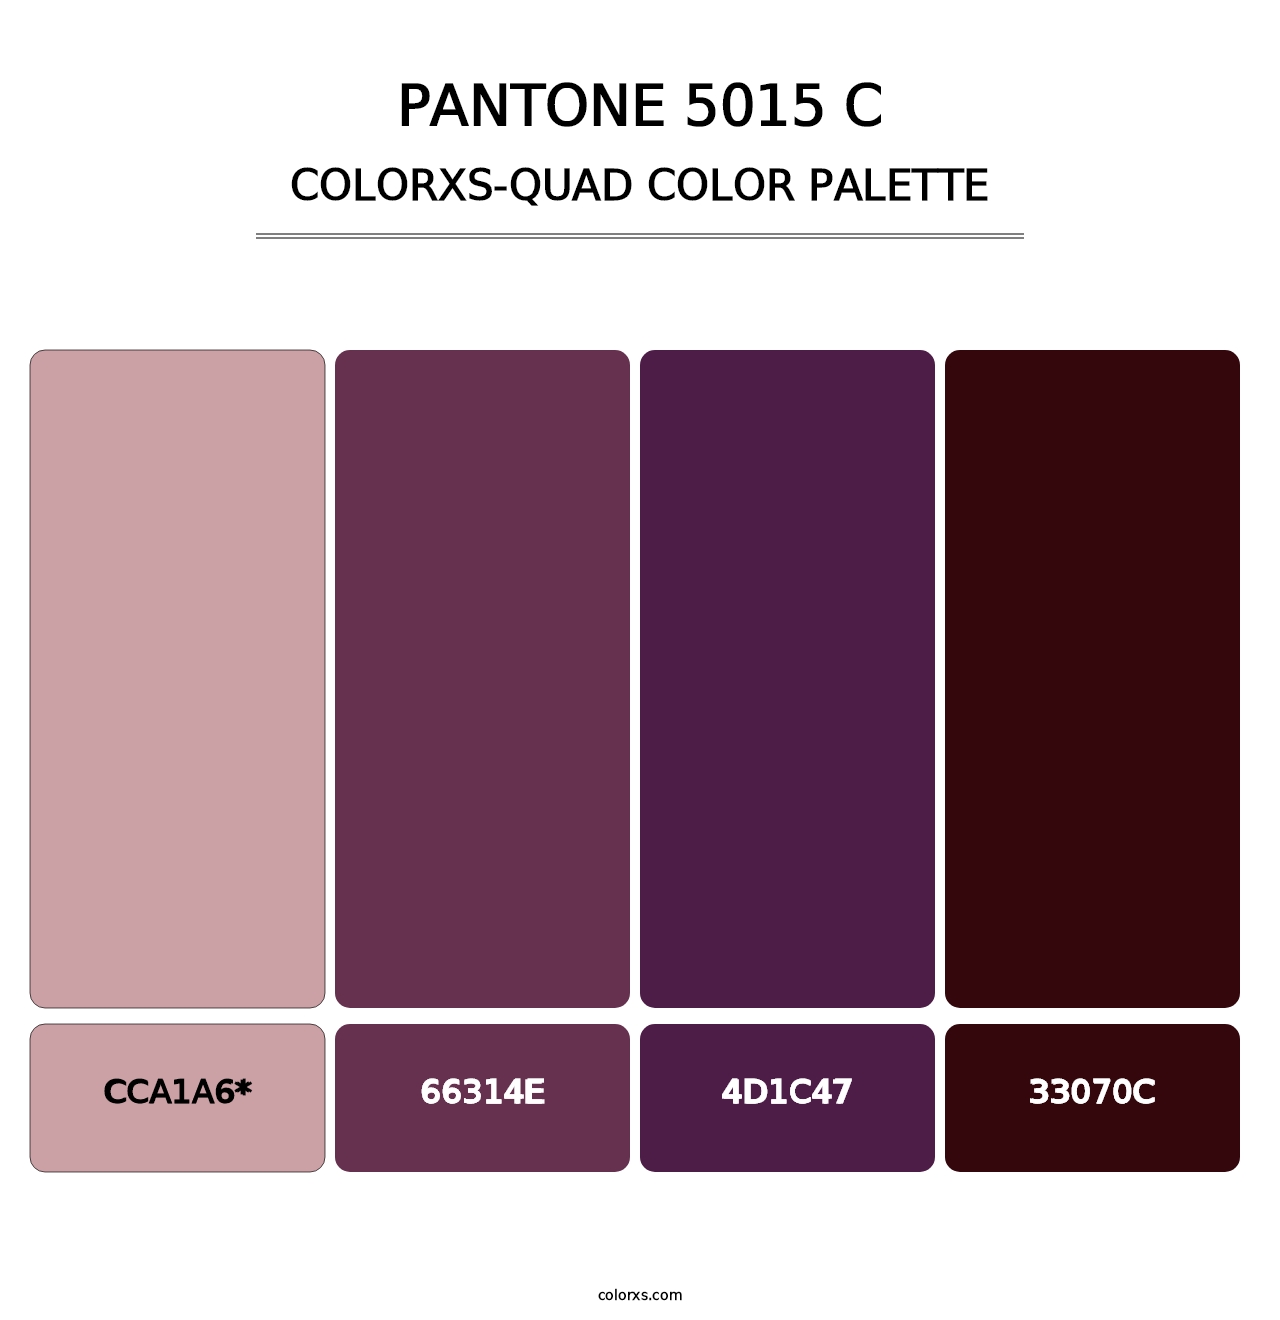 PANTONE 5015 C - Colorxs Quad Palette